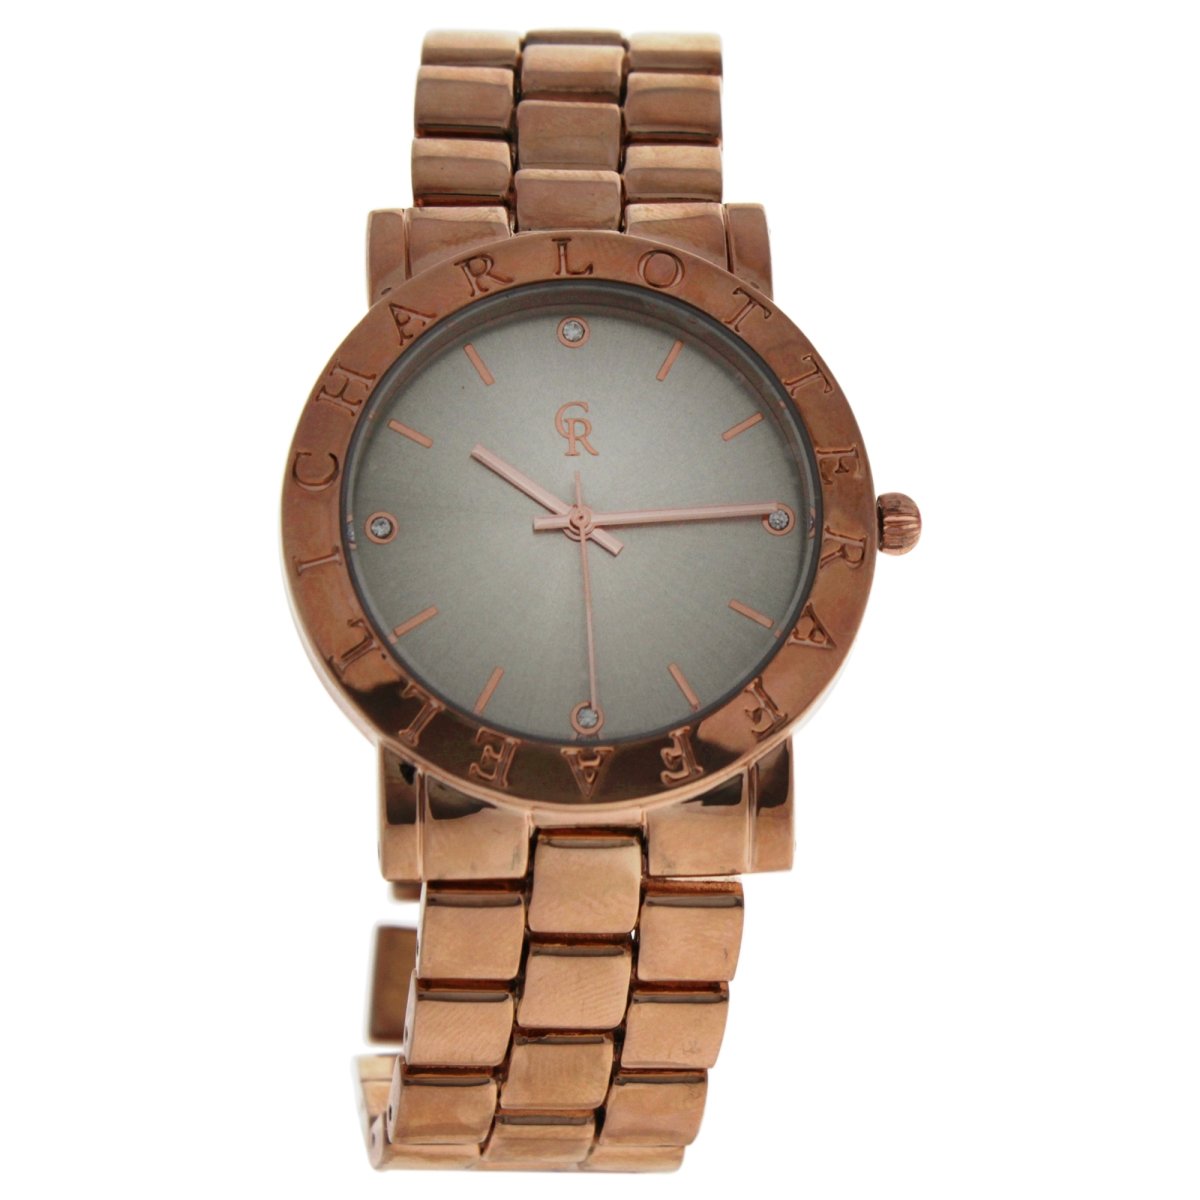 W-wat-1444 Rose Gold Stainless Steel Bracelet Watch For Women - Crm002